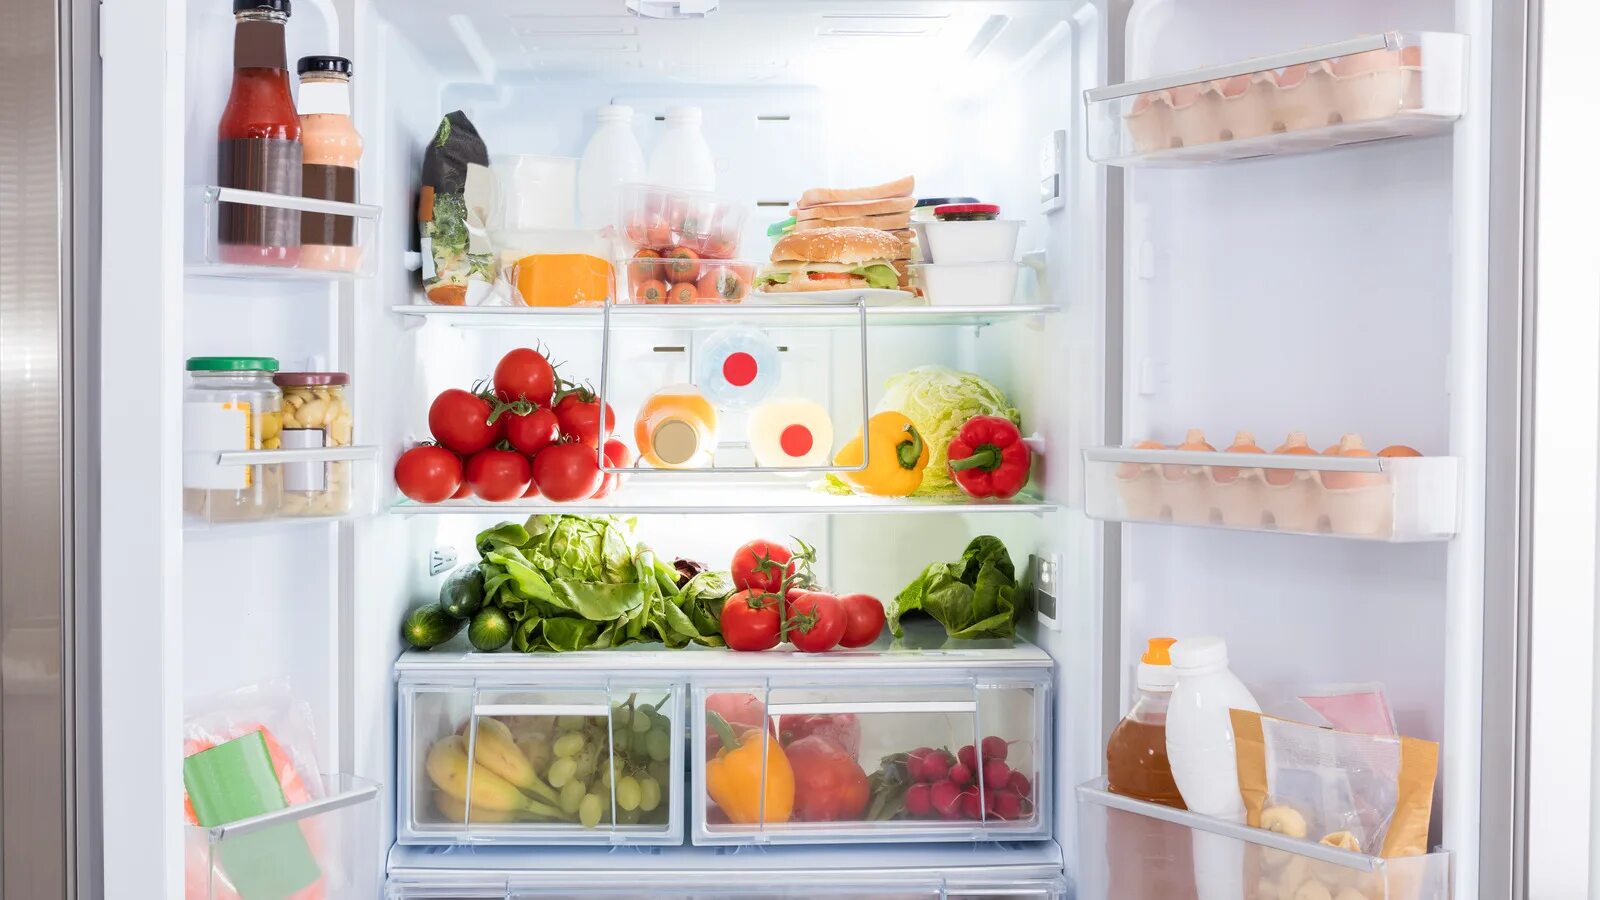 Холодильники аска. Холодильник с продуктами. Открытый холодильник. [Jkjlbkmybr c ghjkernfvb. Открытый холодильник с едой.